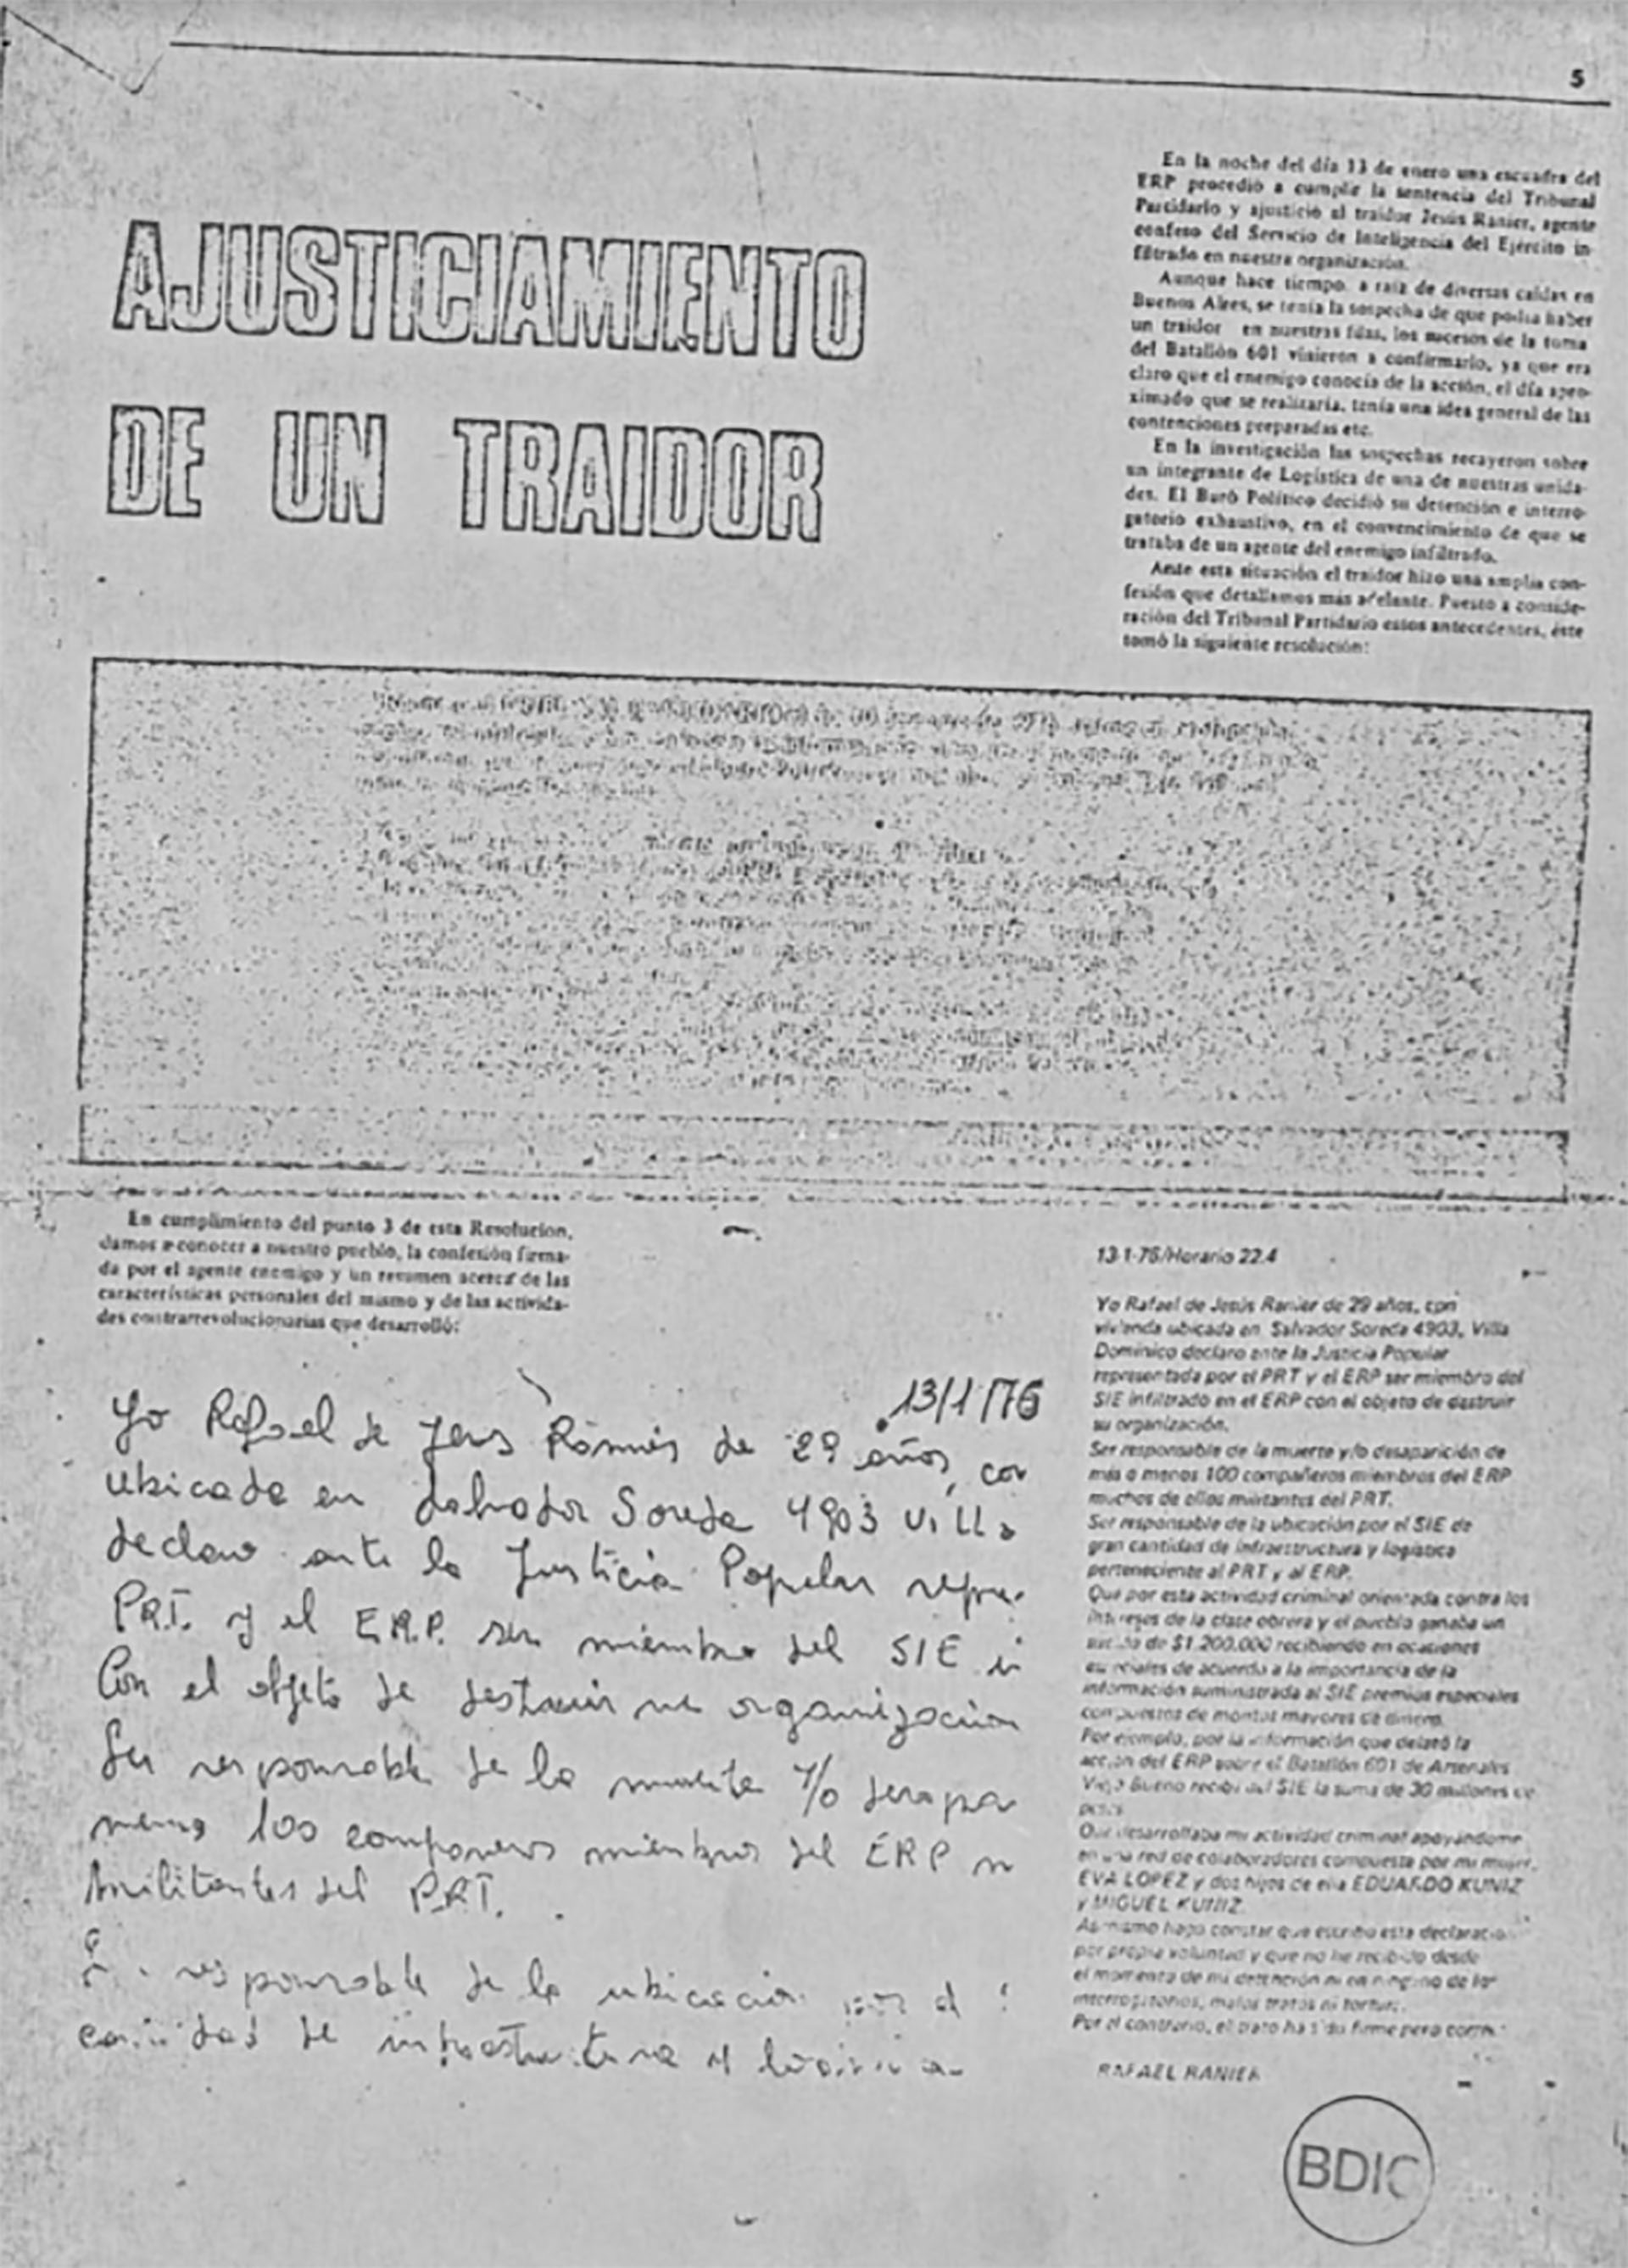 La revista El Combatiente con el artículo que consignaba el “Ajusticiamiento de un traidor” y la carta manuscrita de Ranier antes de ser condenado a muerte por el Buró Político de la organización